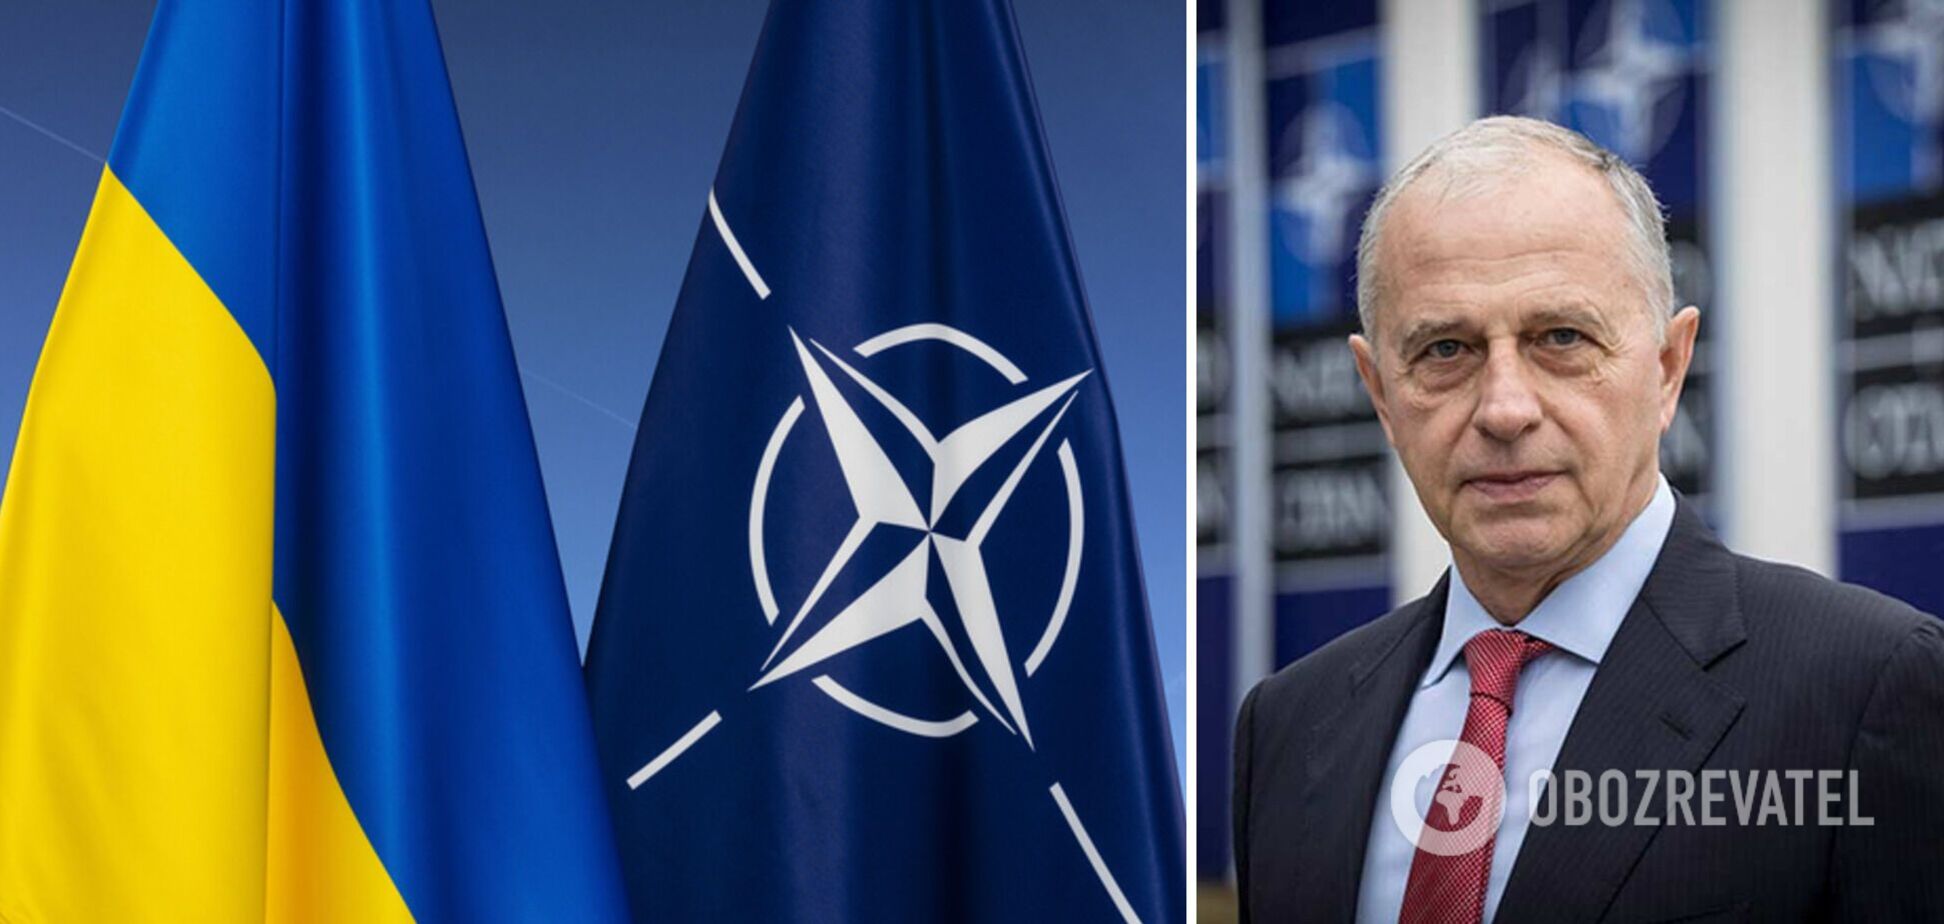 РФ как самая большая угроза и новая помощь Украине: НАТО на саммите утвердит новую стратегическую концепцию